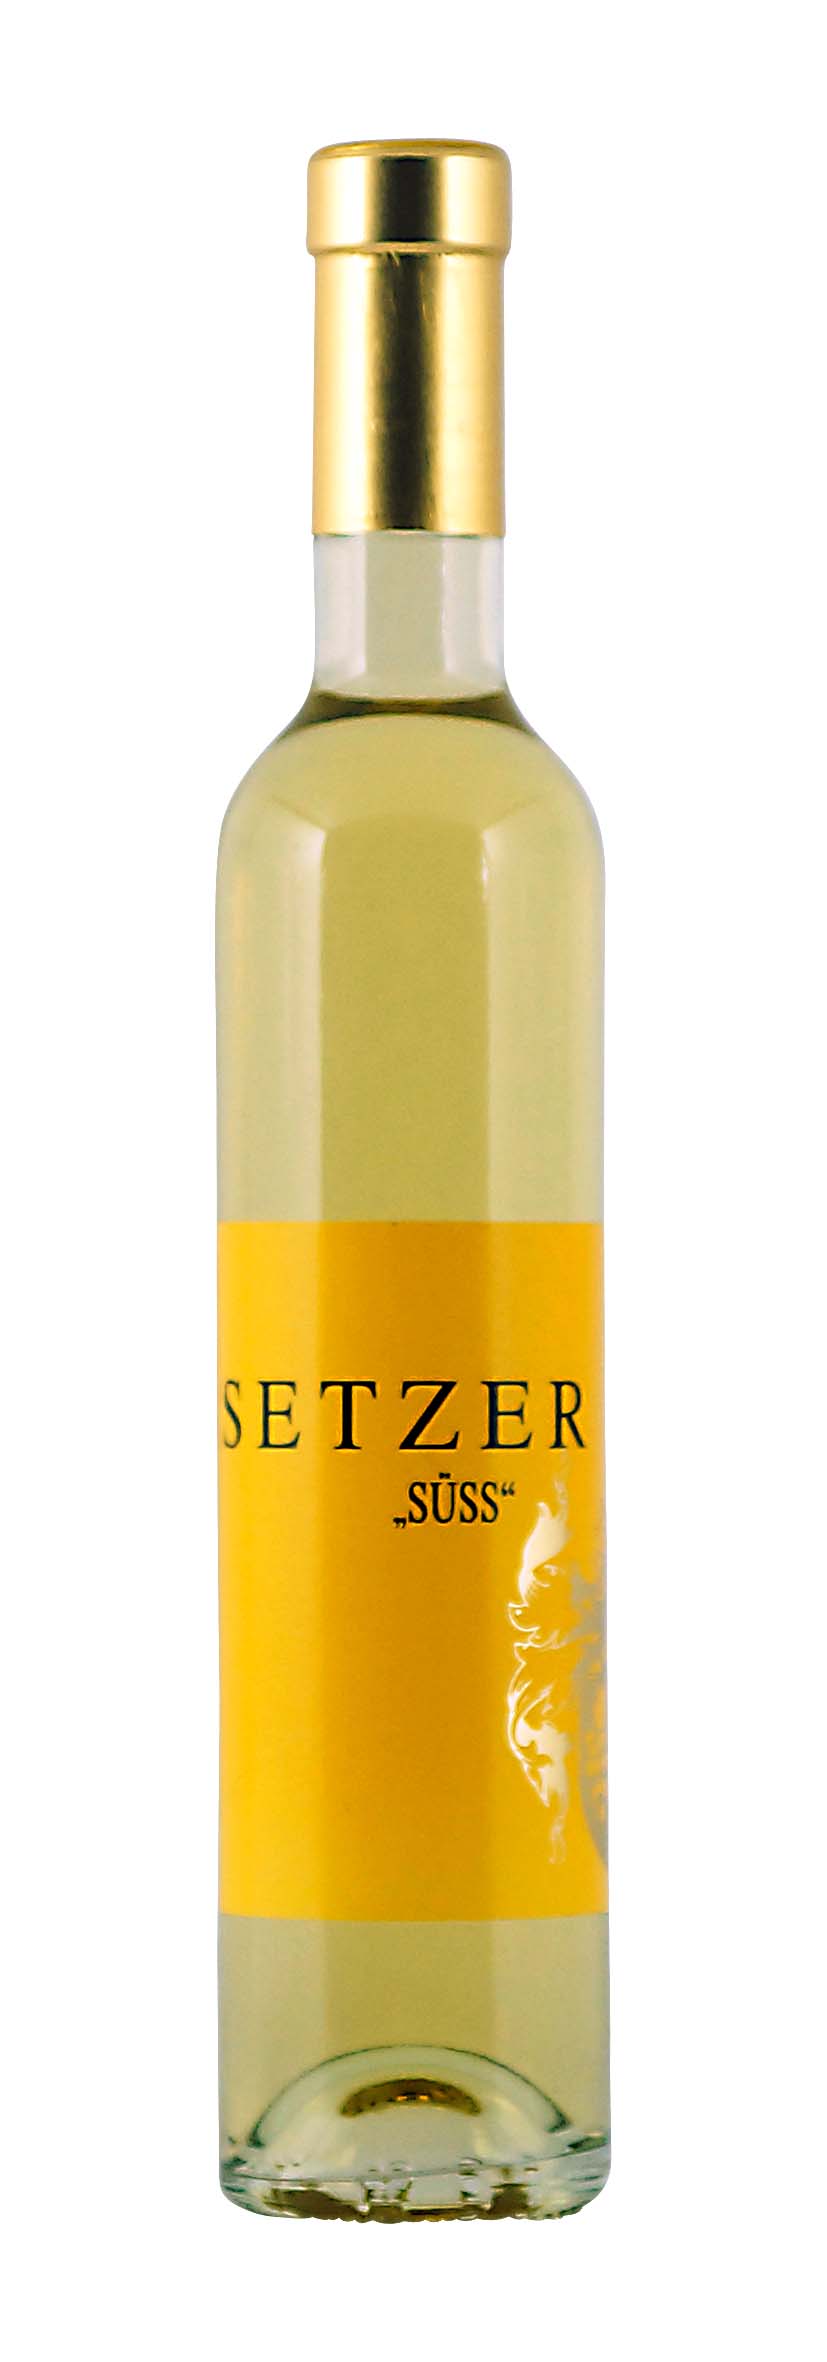 Niederösterreich Setzer «Süss» 2011